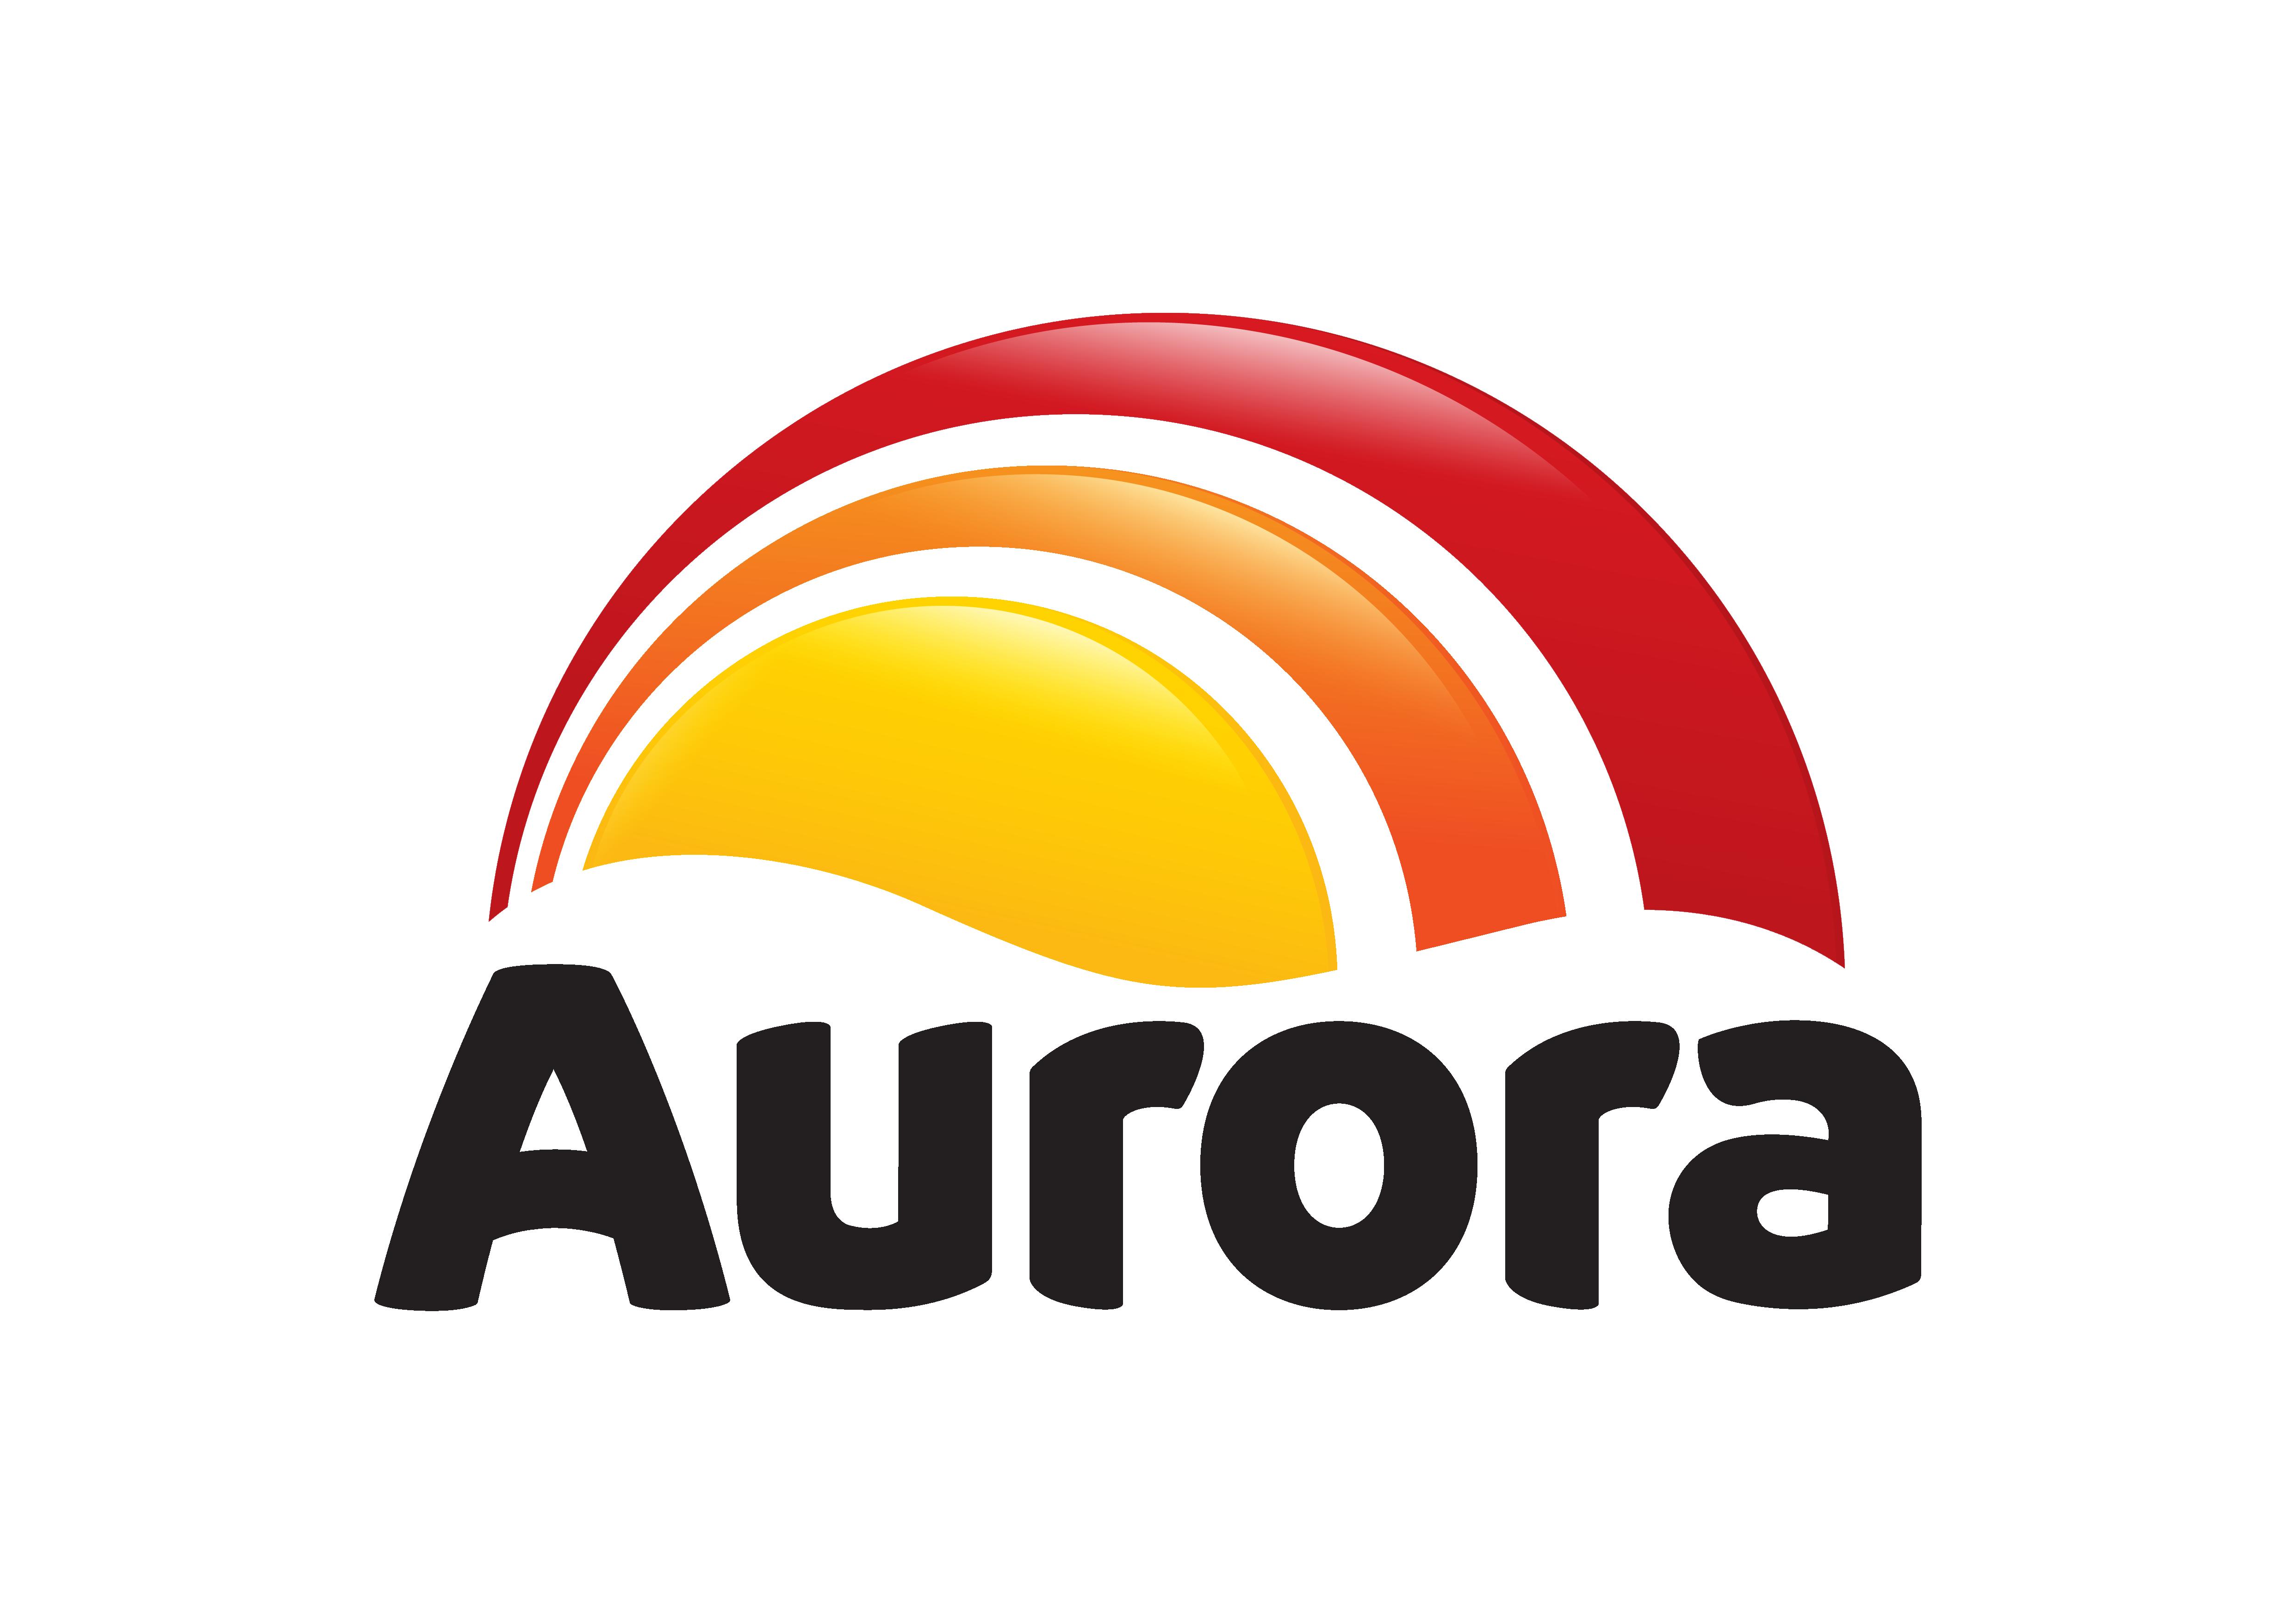 logo Aurora